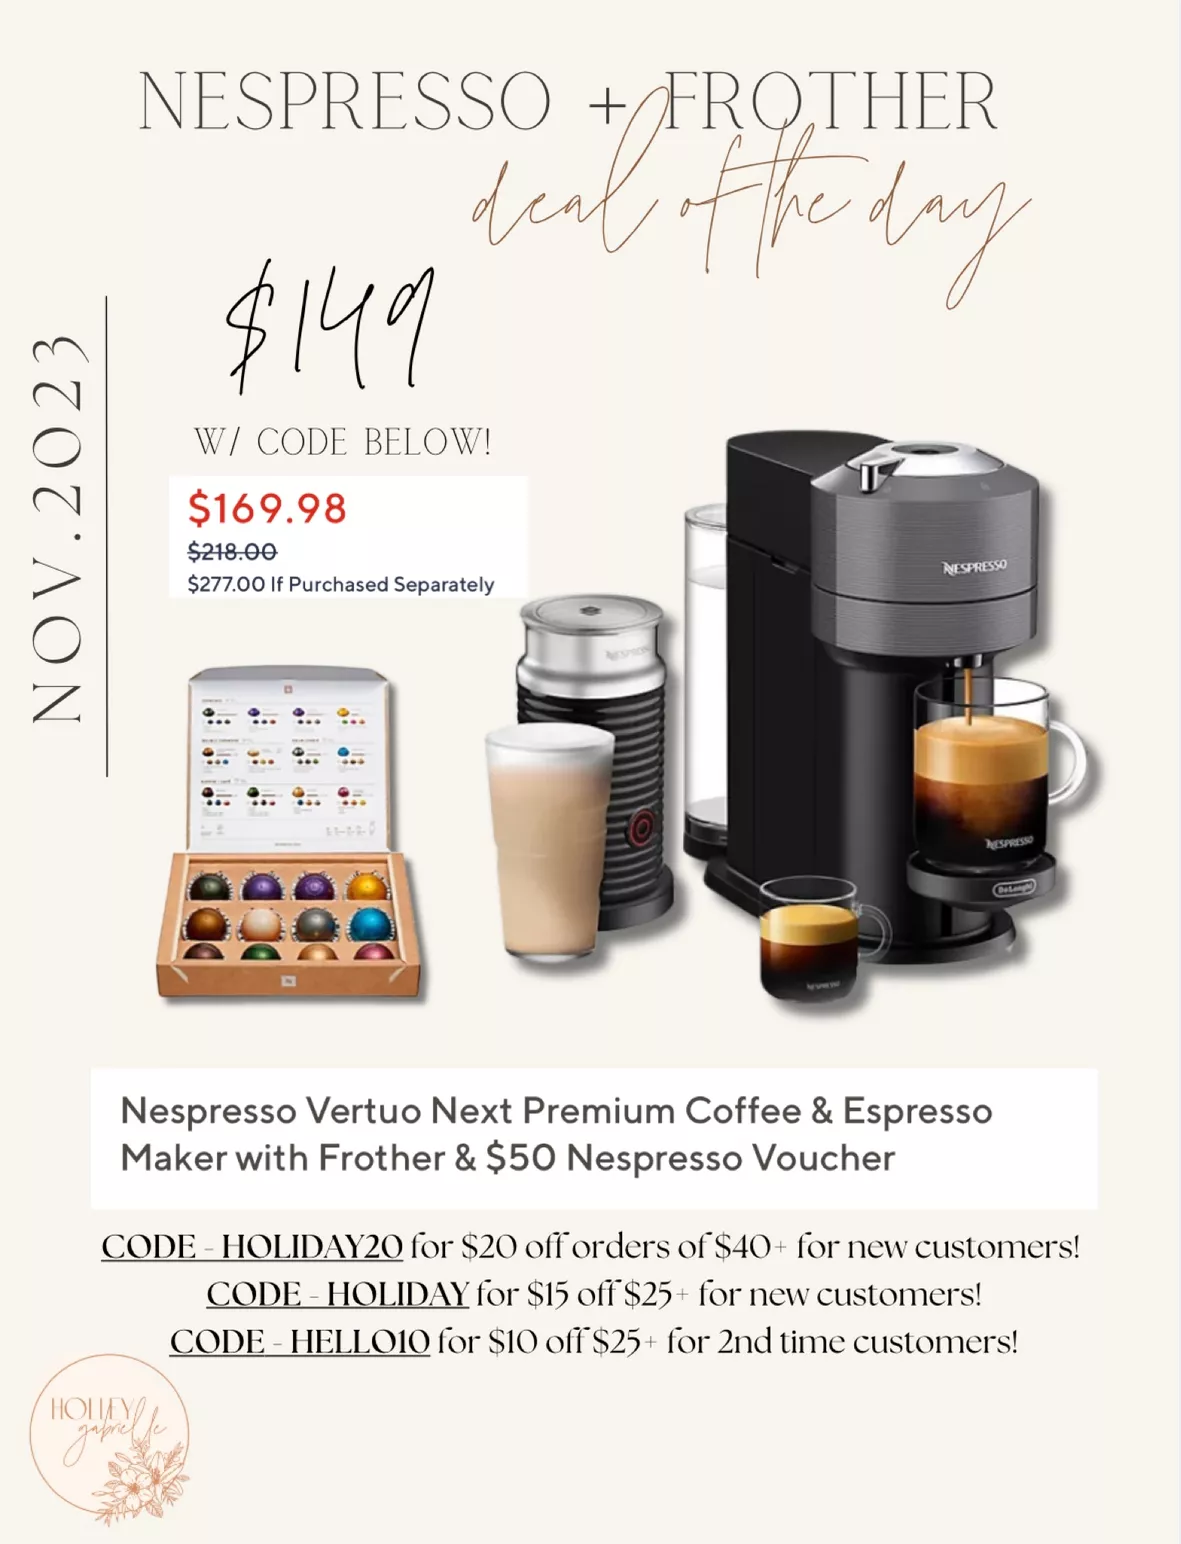  Nespresso Vertuo Next Premium Coffee and Espresso